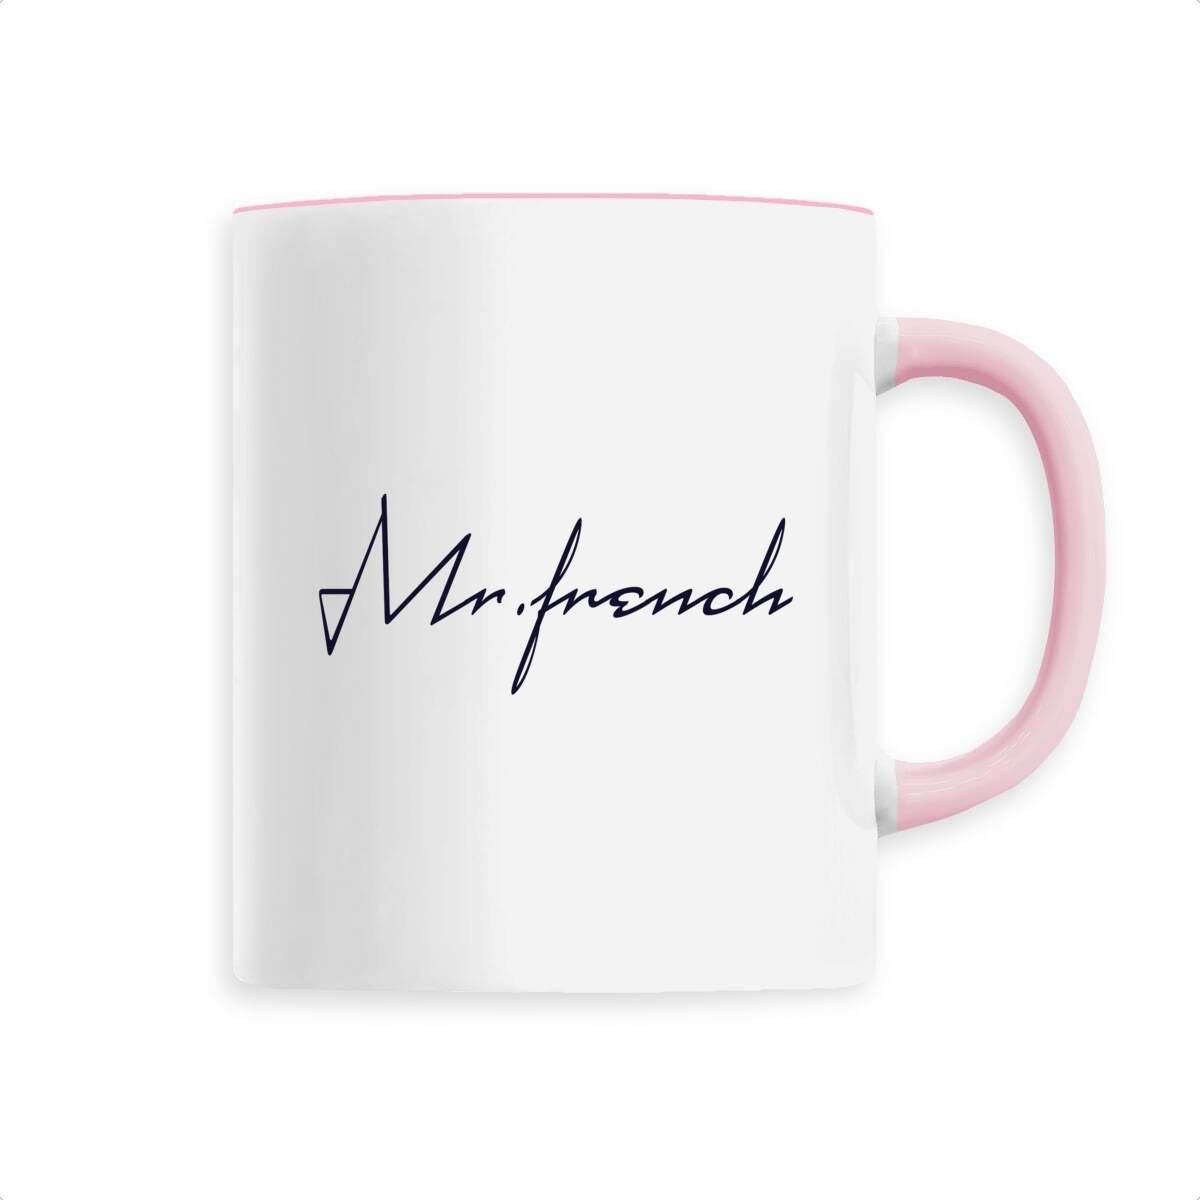 Mug Céramique - Mr French, mug Mr French en céramique de T-French, mug céramique avec impression, mug idée cadeau fête des pères, mug french touch, mug homme Mr French, mug french, mug cadeau, mug rose